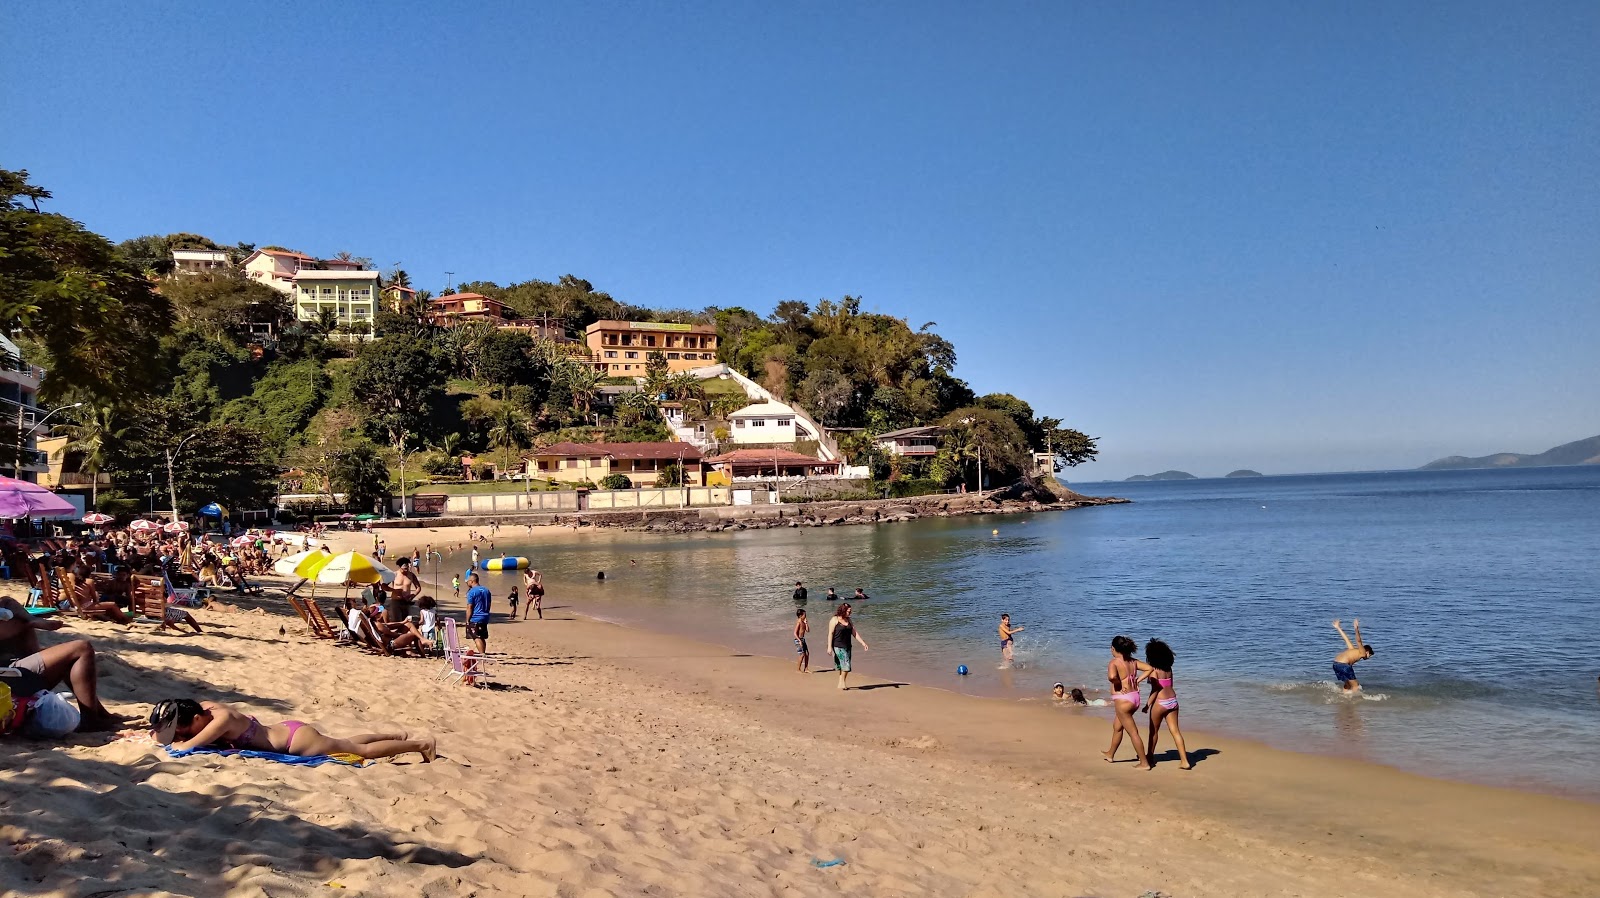 Ibicui Plajı'in fotoğrafı parlak kum yüzey ile